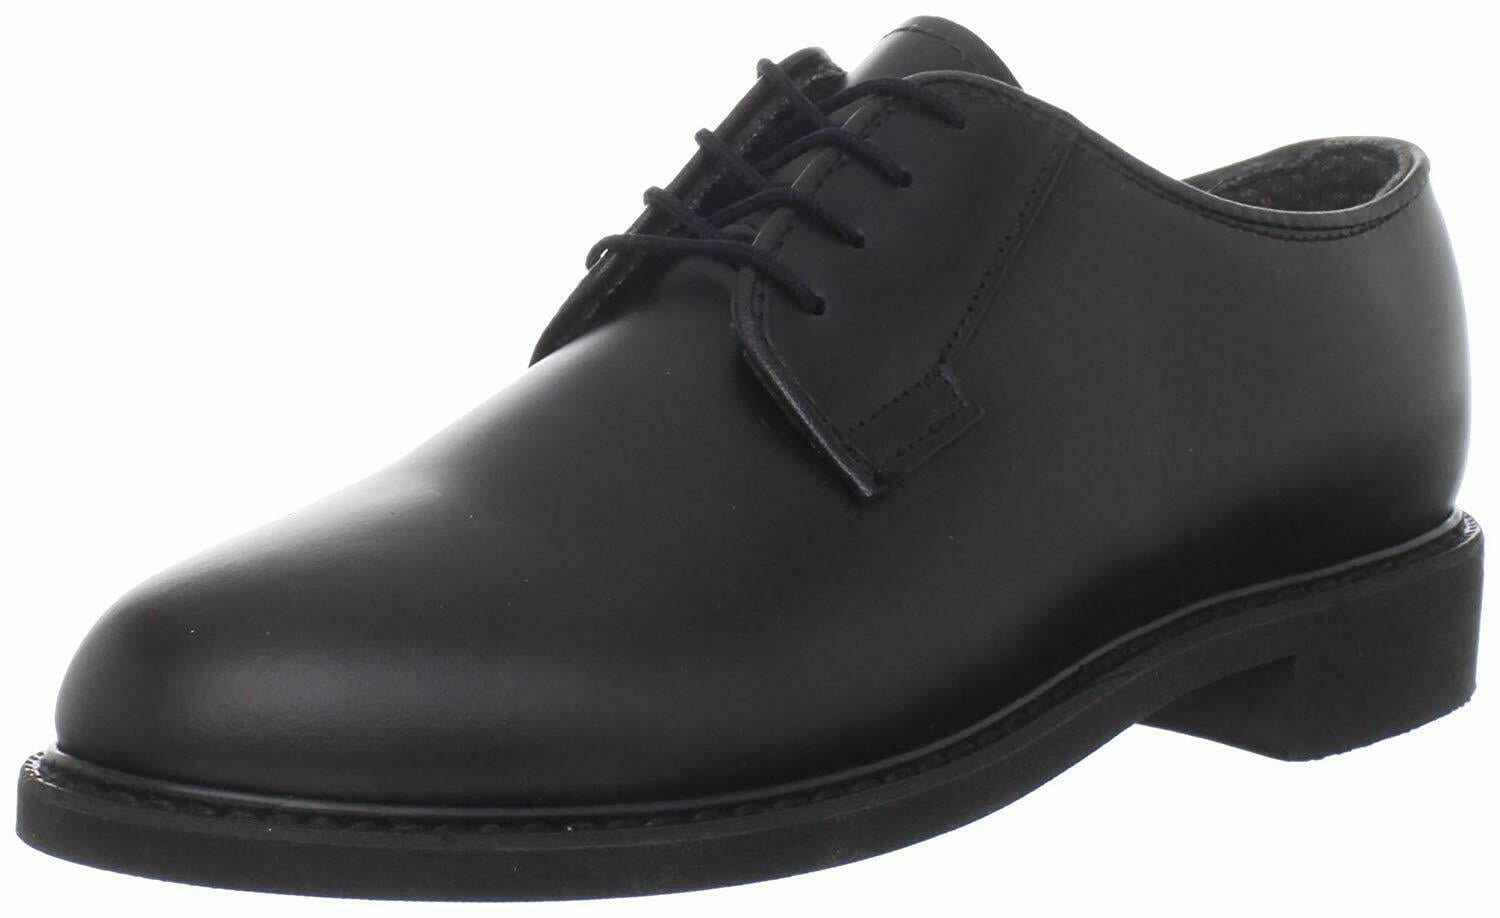 Leather Uniform Oxford shoes Black 